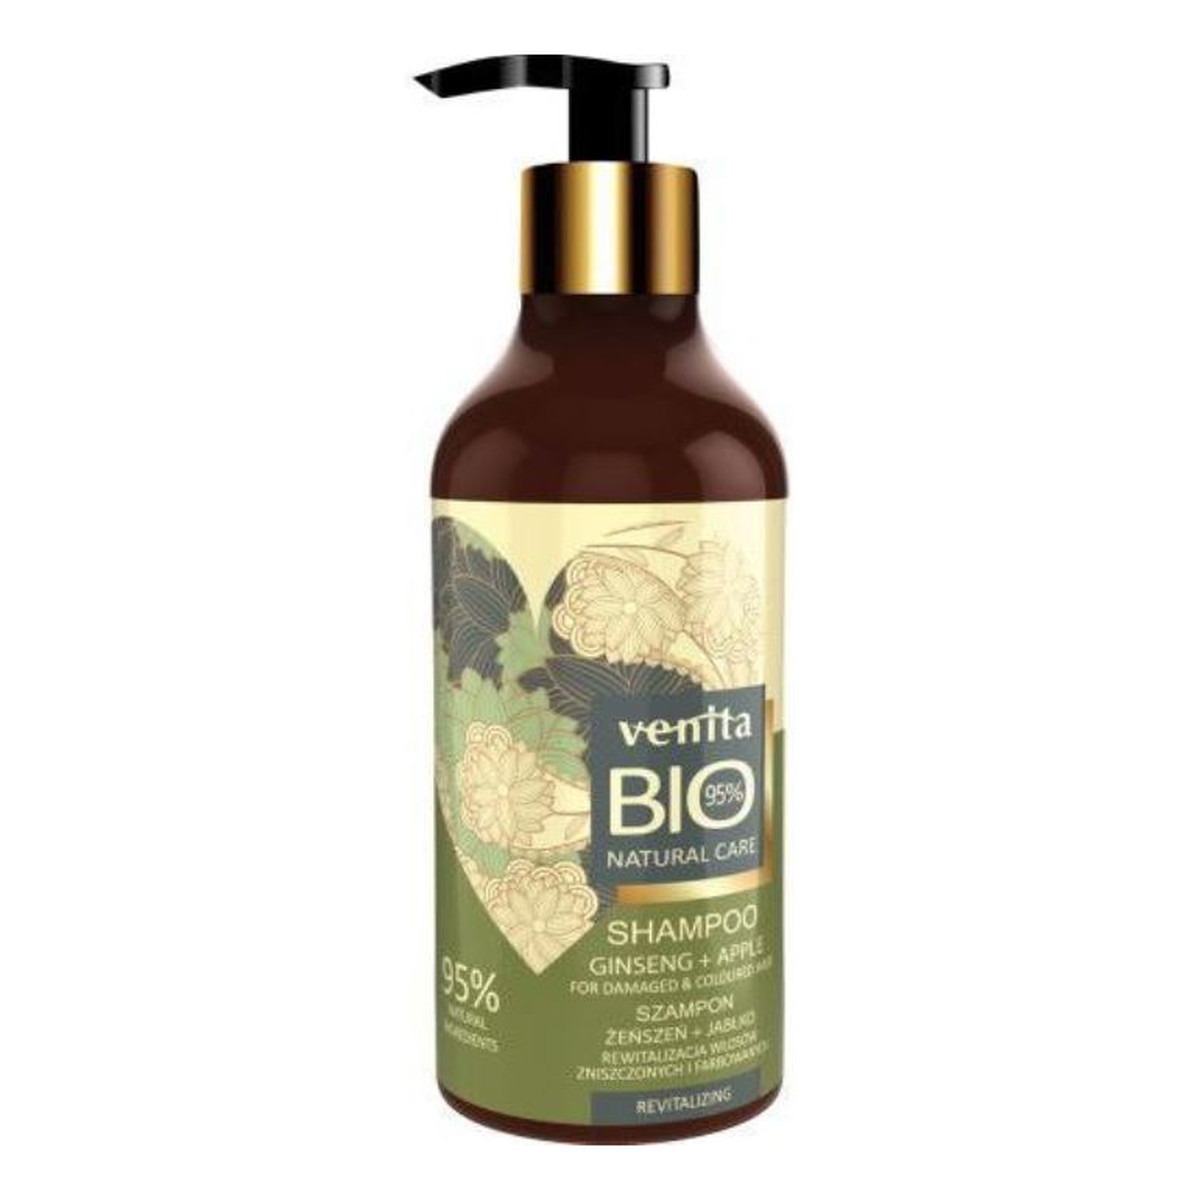 Venita Bio Natural Care revitalizing hair shampoo szampon do włosów farbowanych i wymagających regeneracji żeńszeń & jabłko 400ml